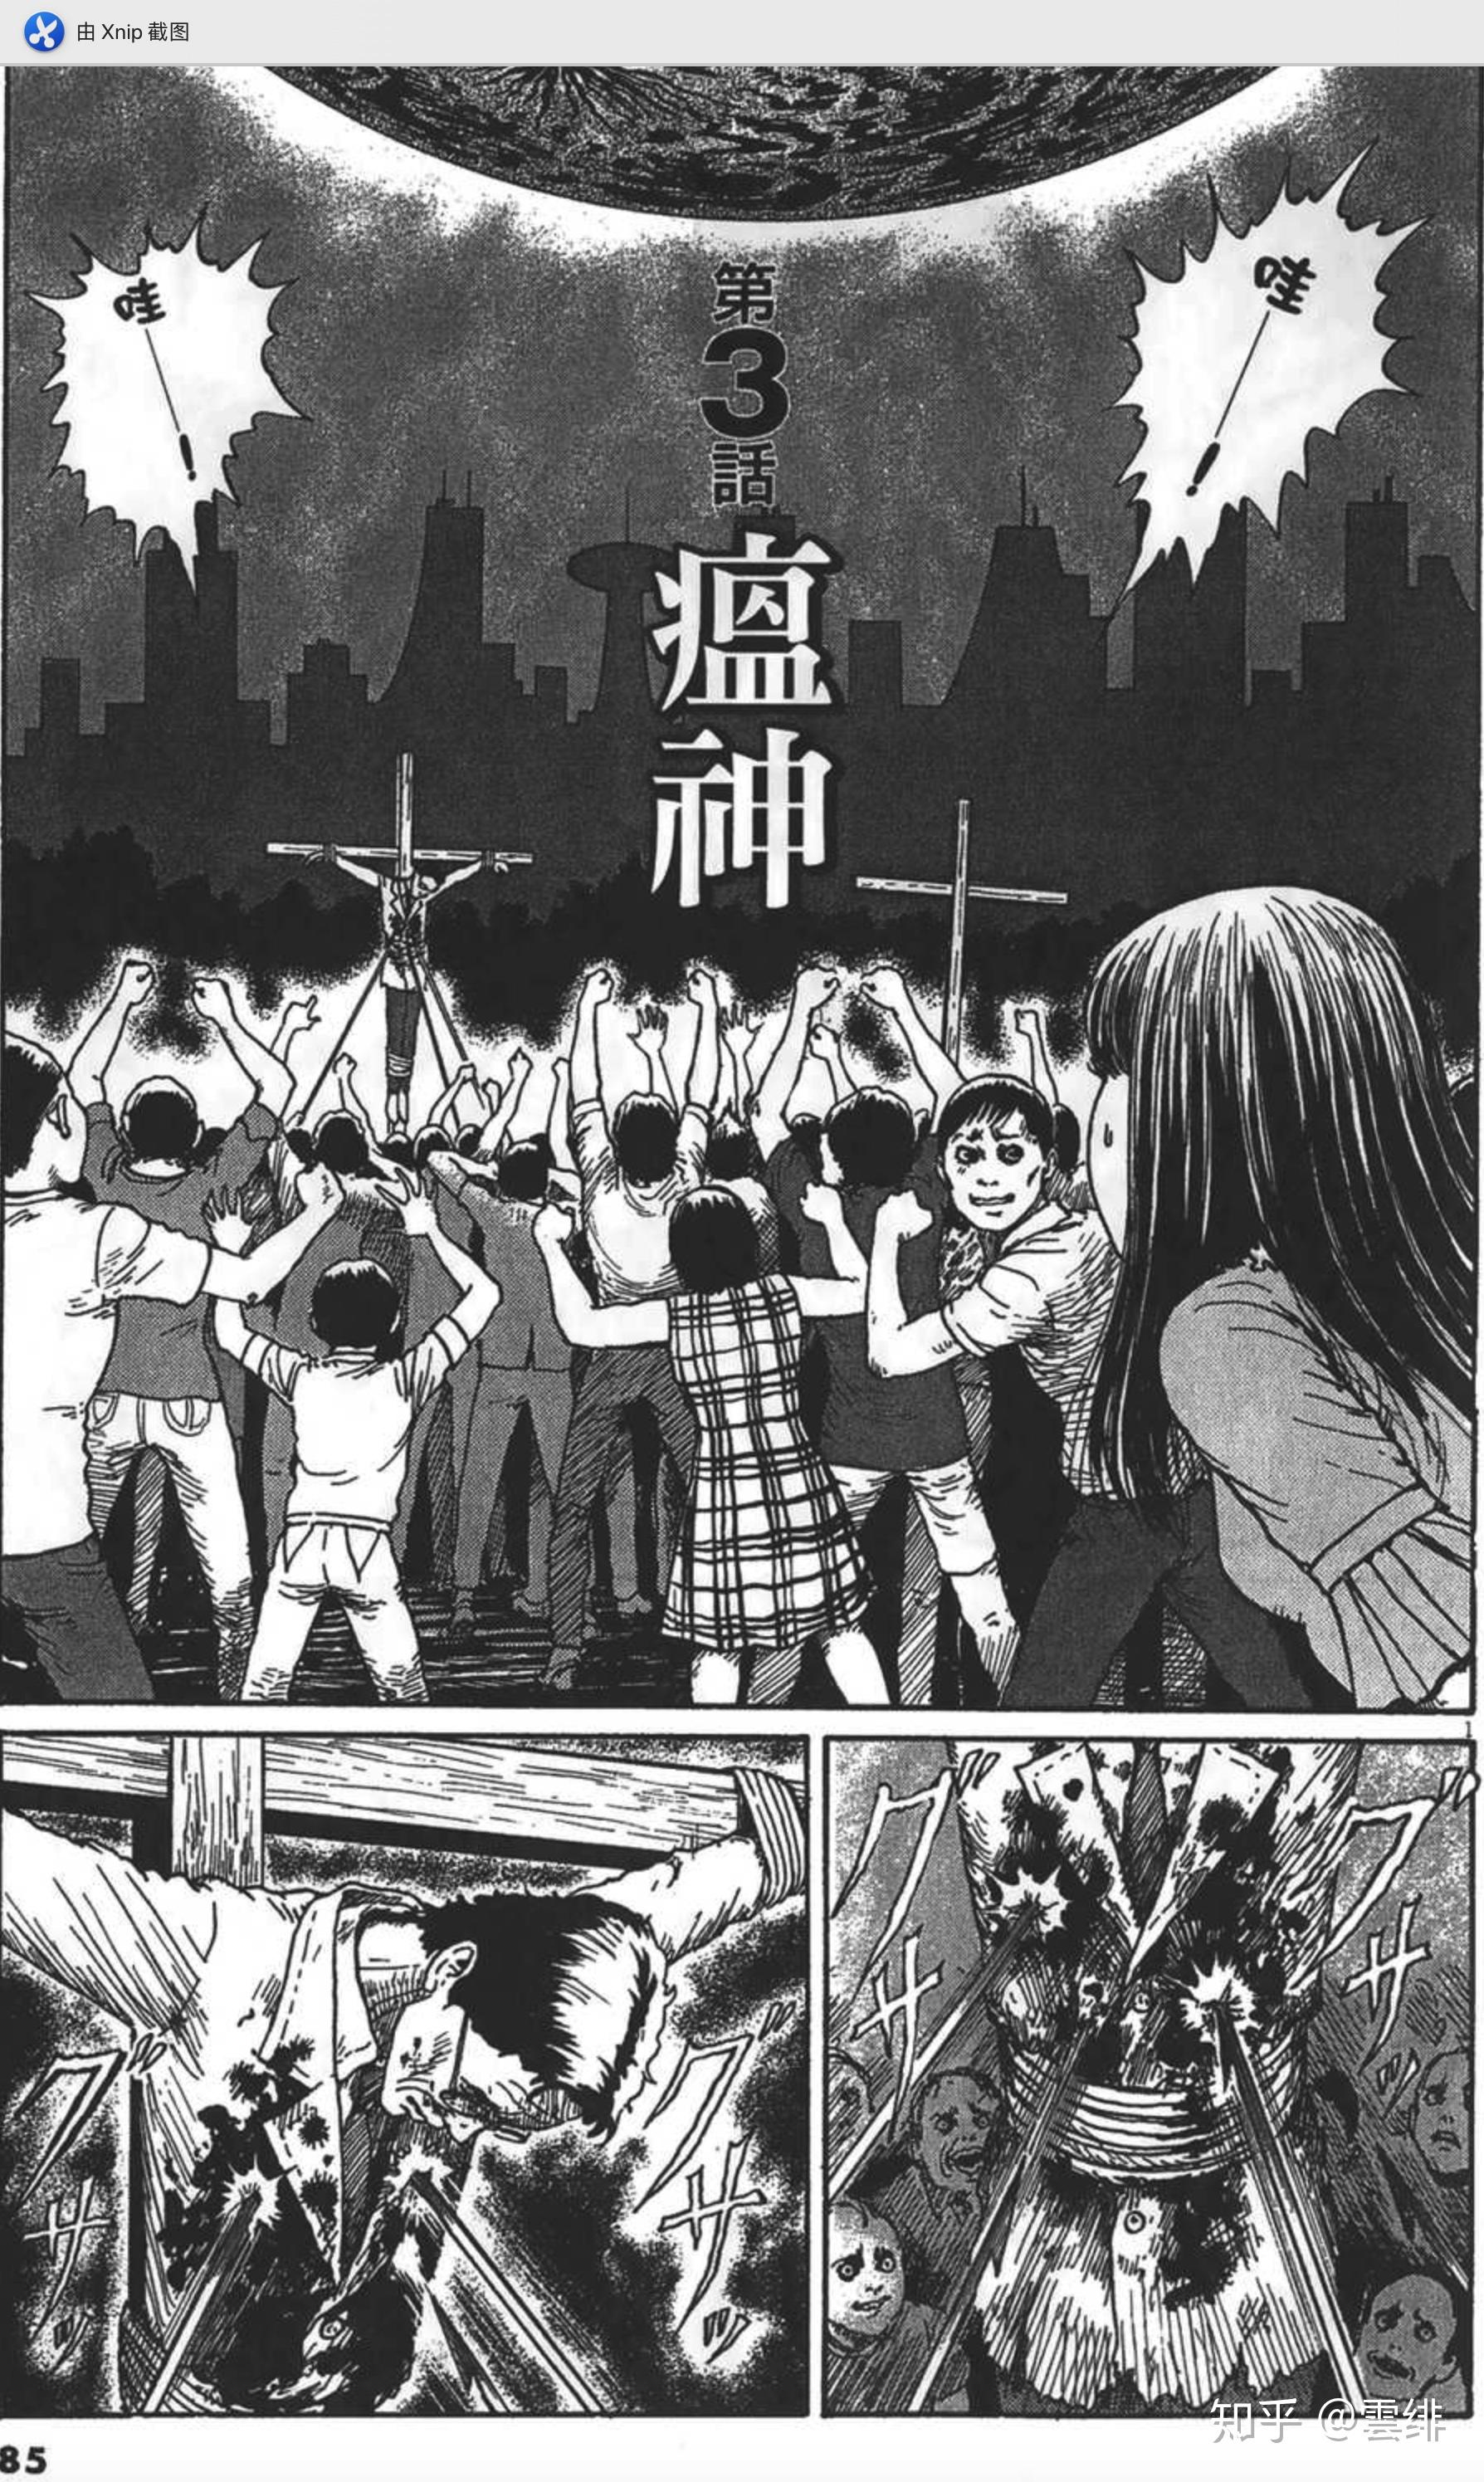 【恐怖漫画】伊藤润二作品《地狱星》第三话《瘟神》 - 知乎